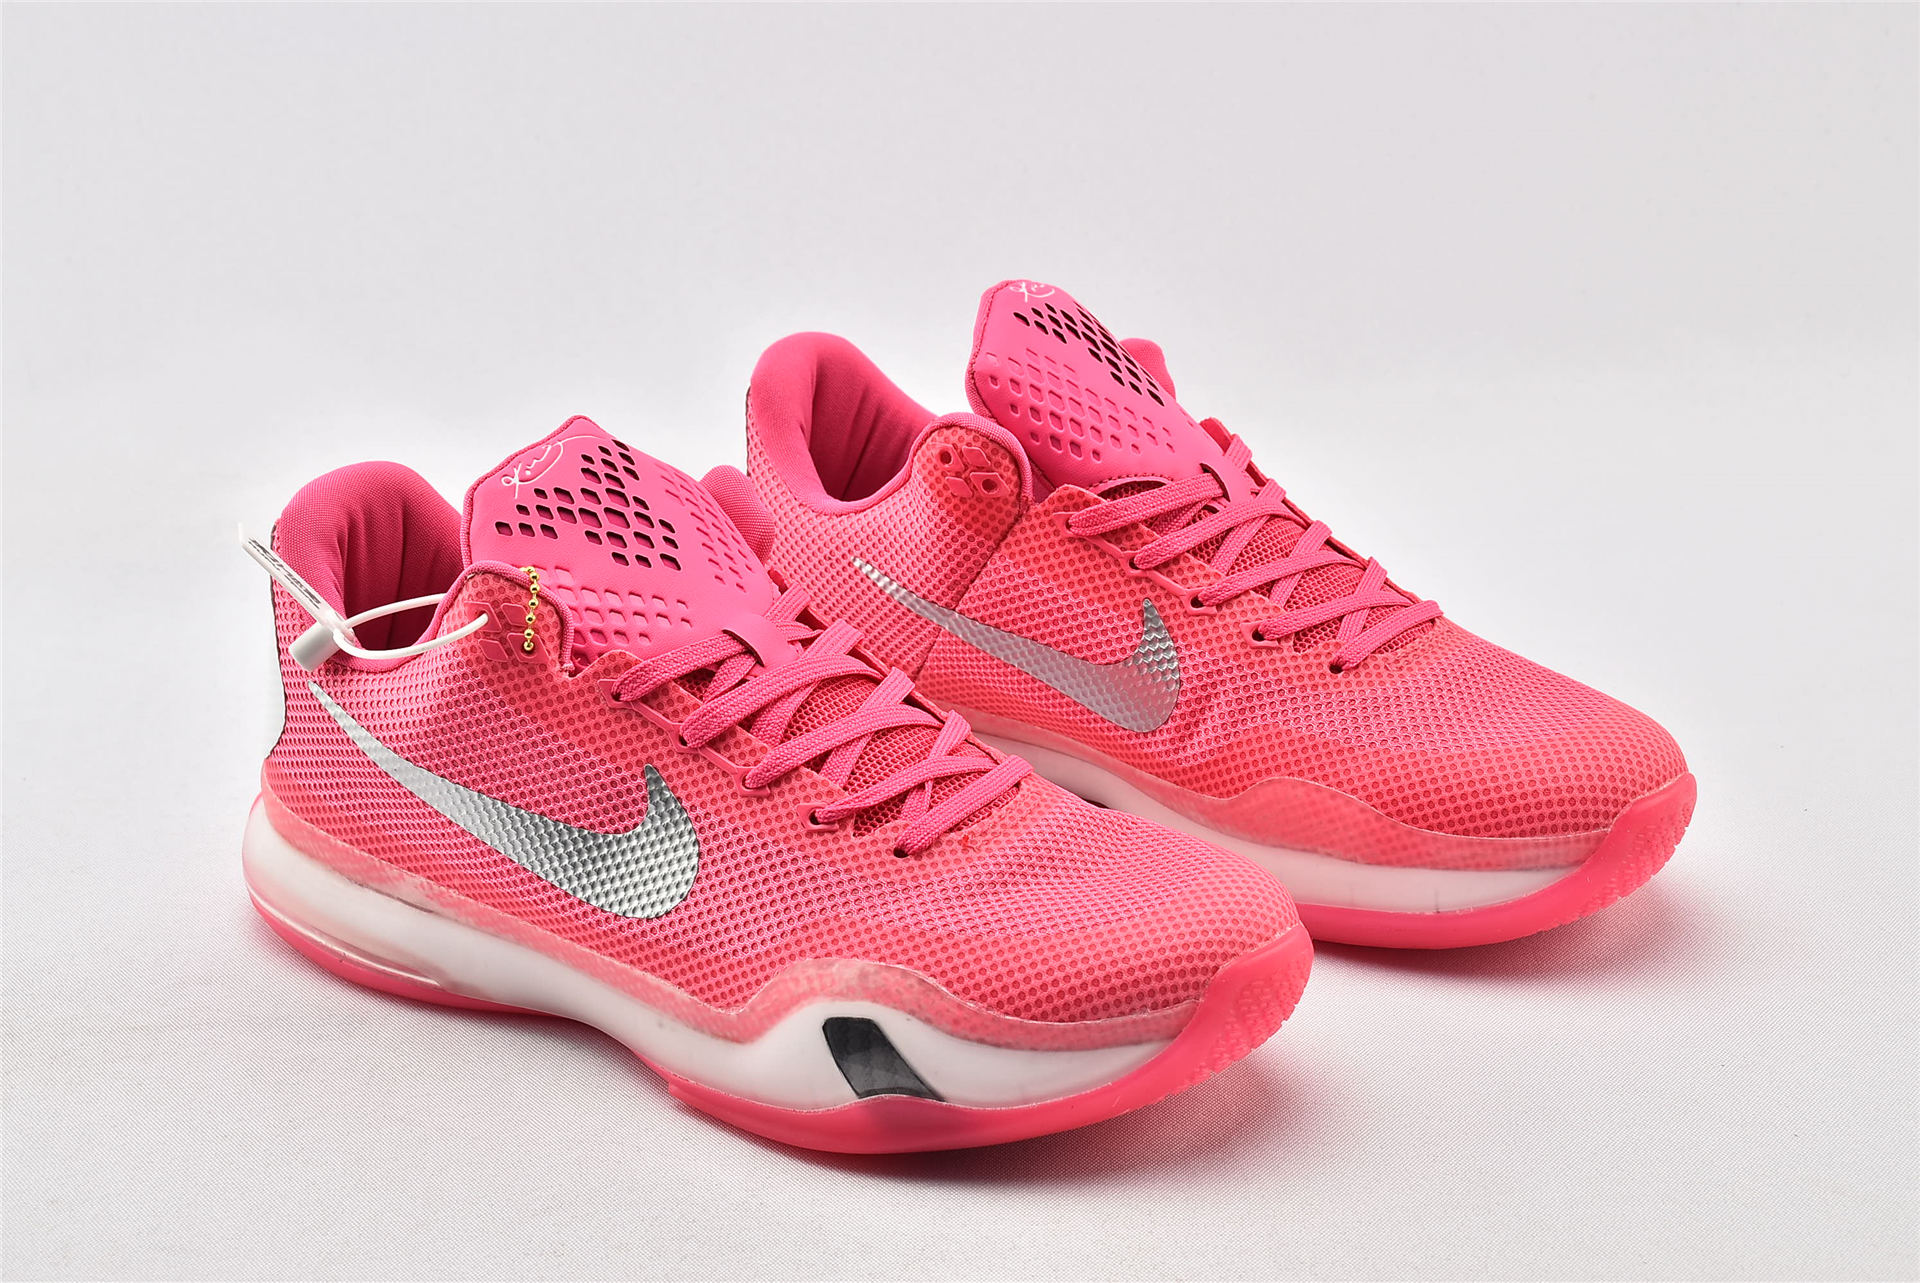 Nike Kobe 10 âThink Pinkâ For Sale â The Sole Line